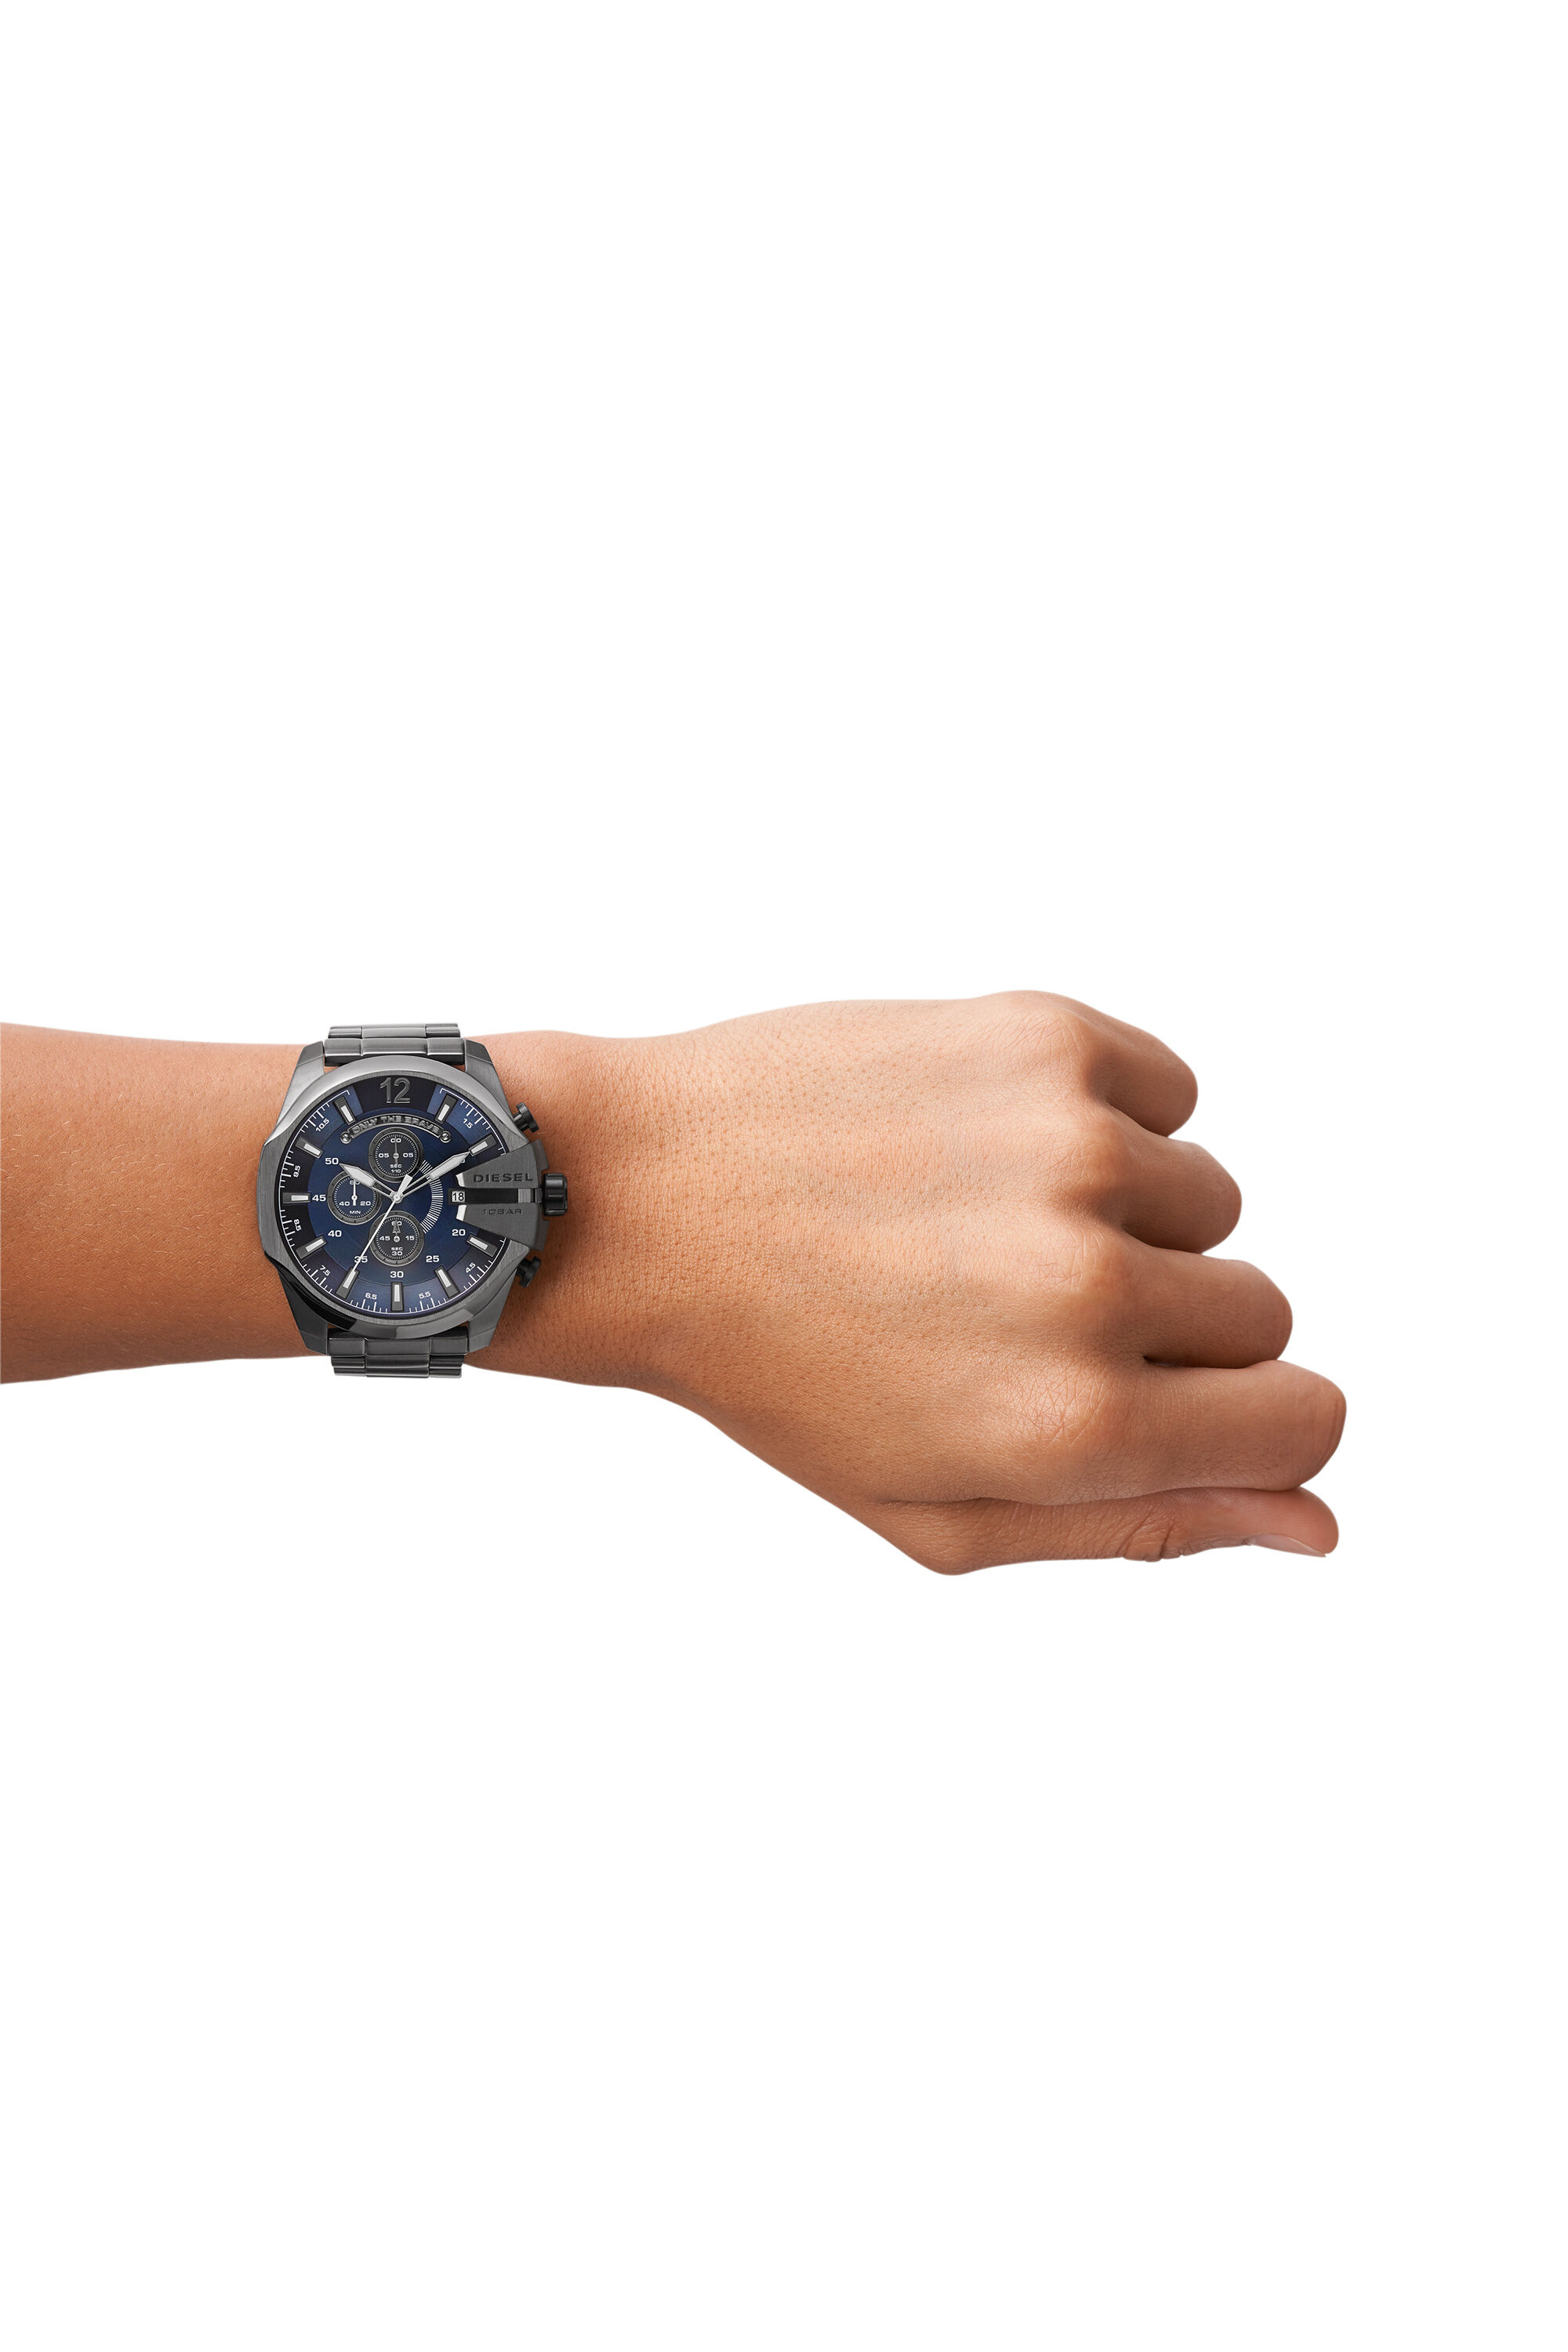 美品 DIESEL 腕時計 dz-4329 メンズ